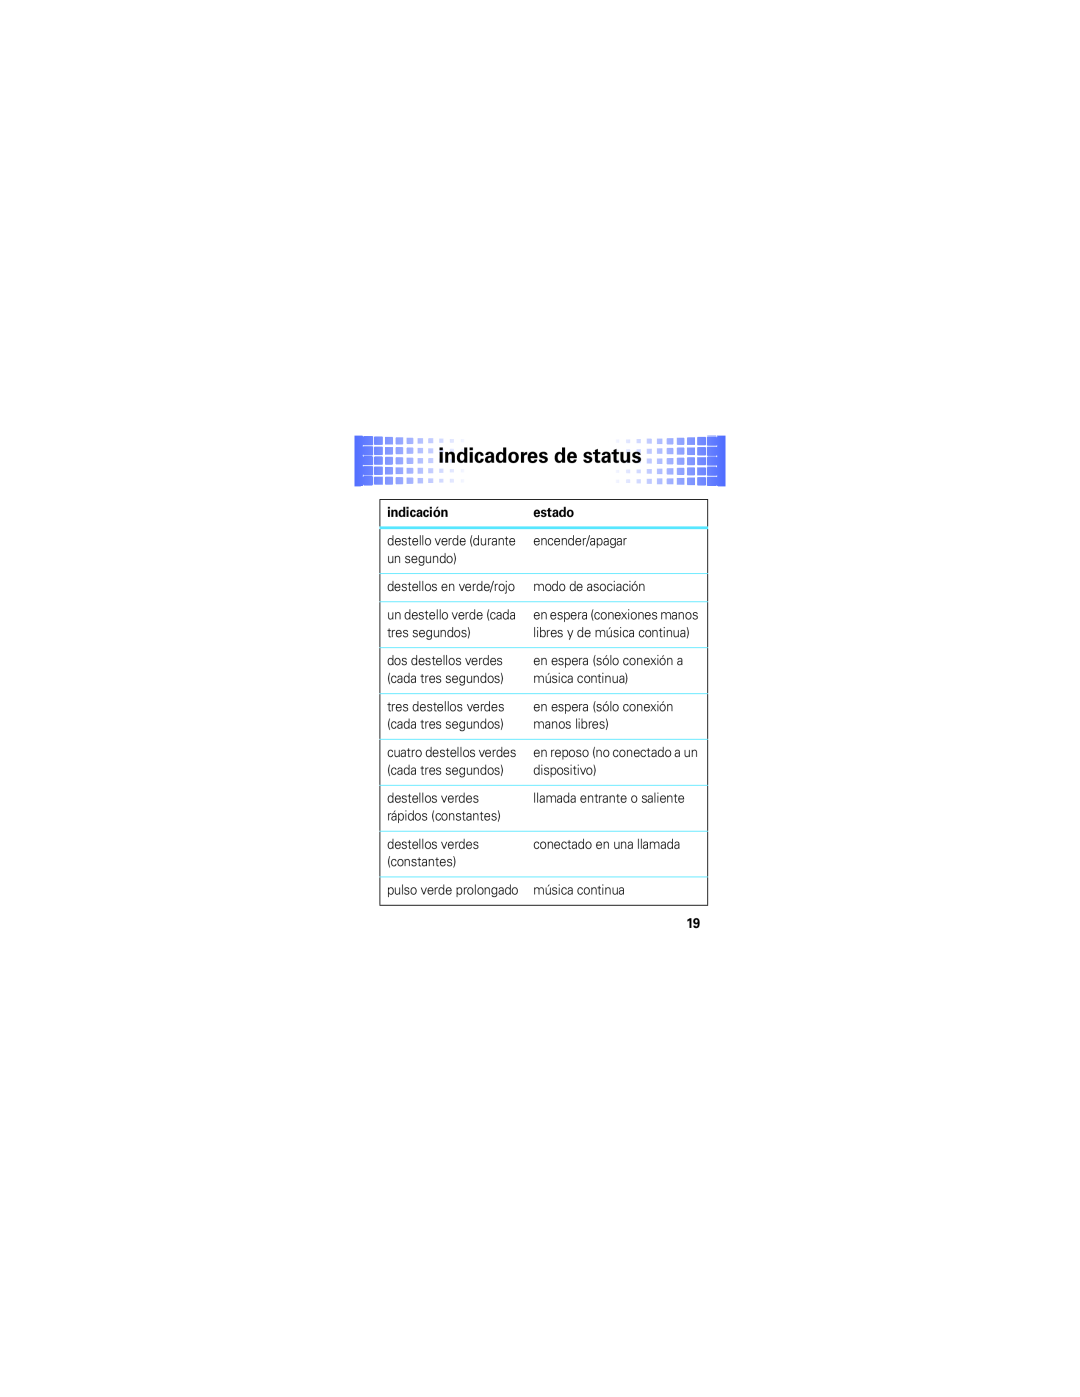 Motorola S305 manual indicadores de status, indicación, estado 